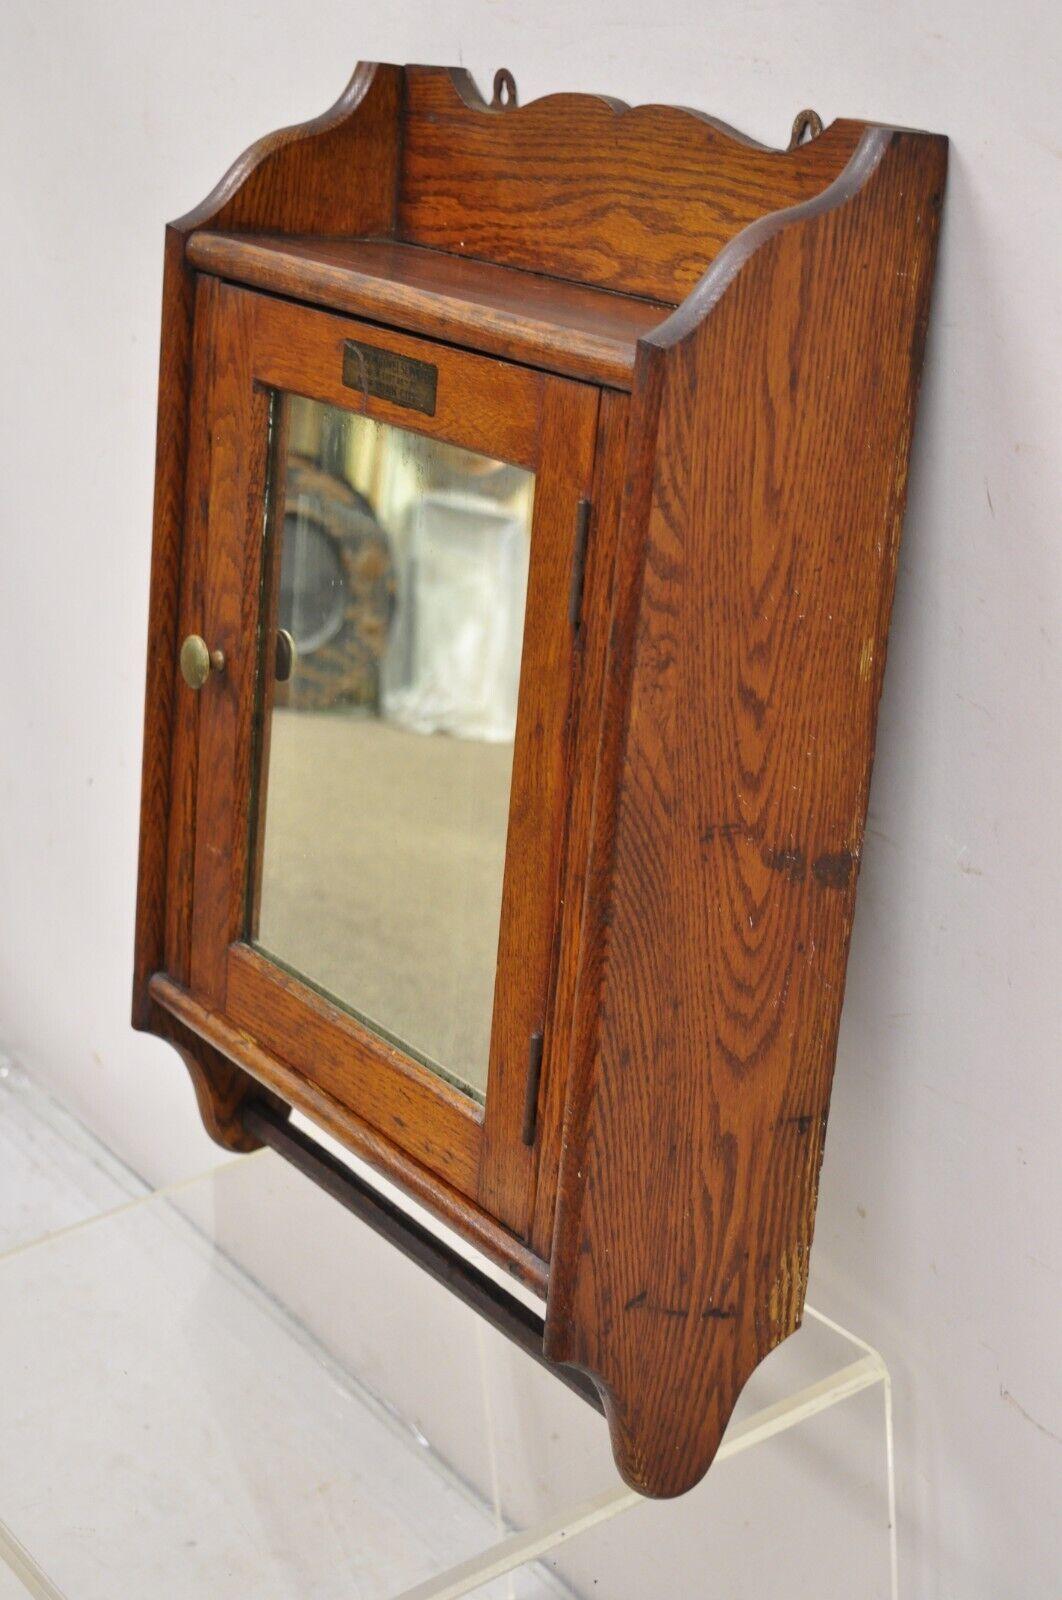 Antique Champion Towel Supply Oak Wood Bathroom Mirror Vanity Medicine Cabinet 2